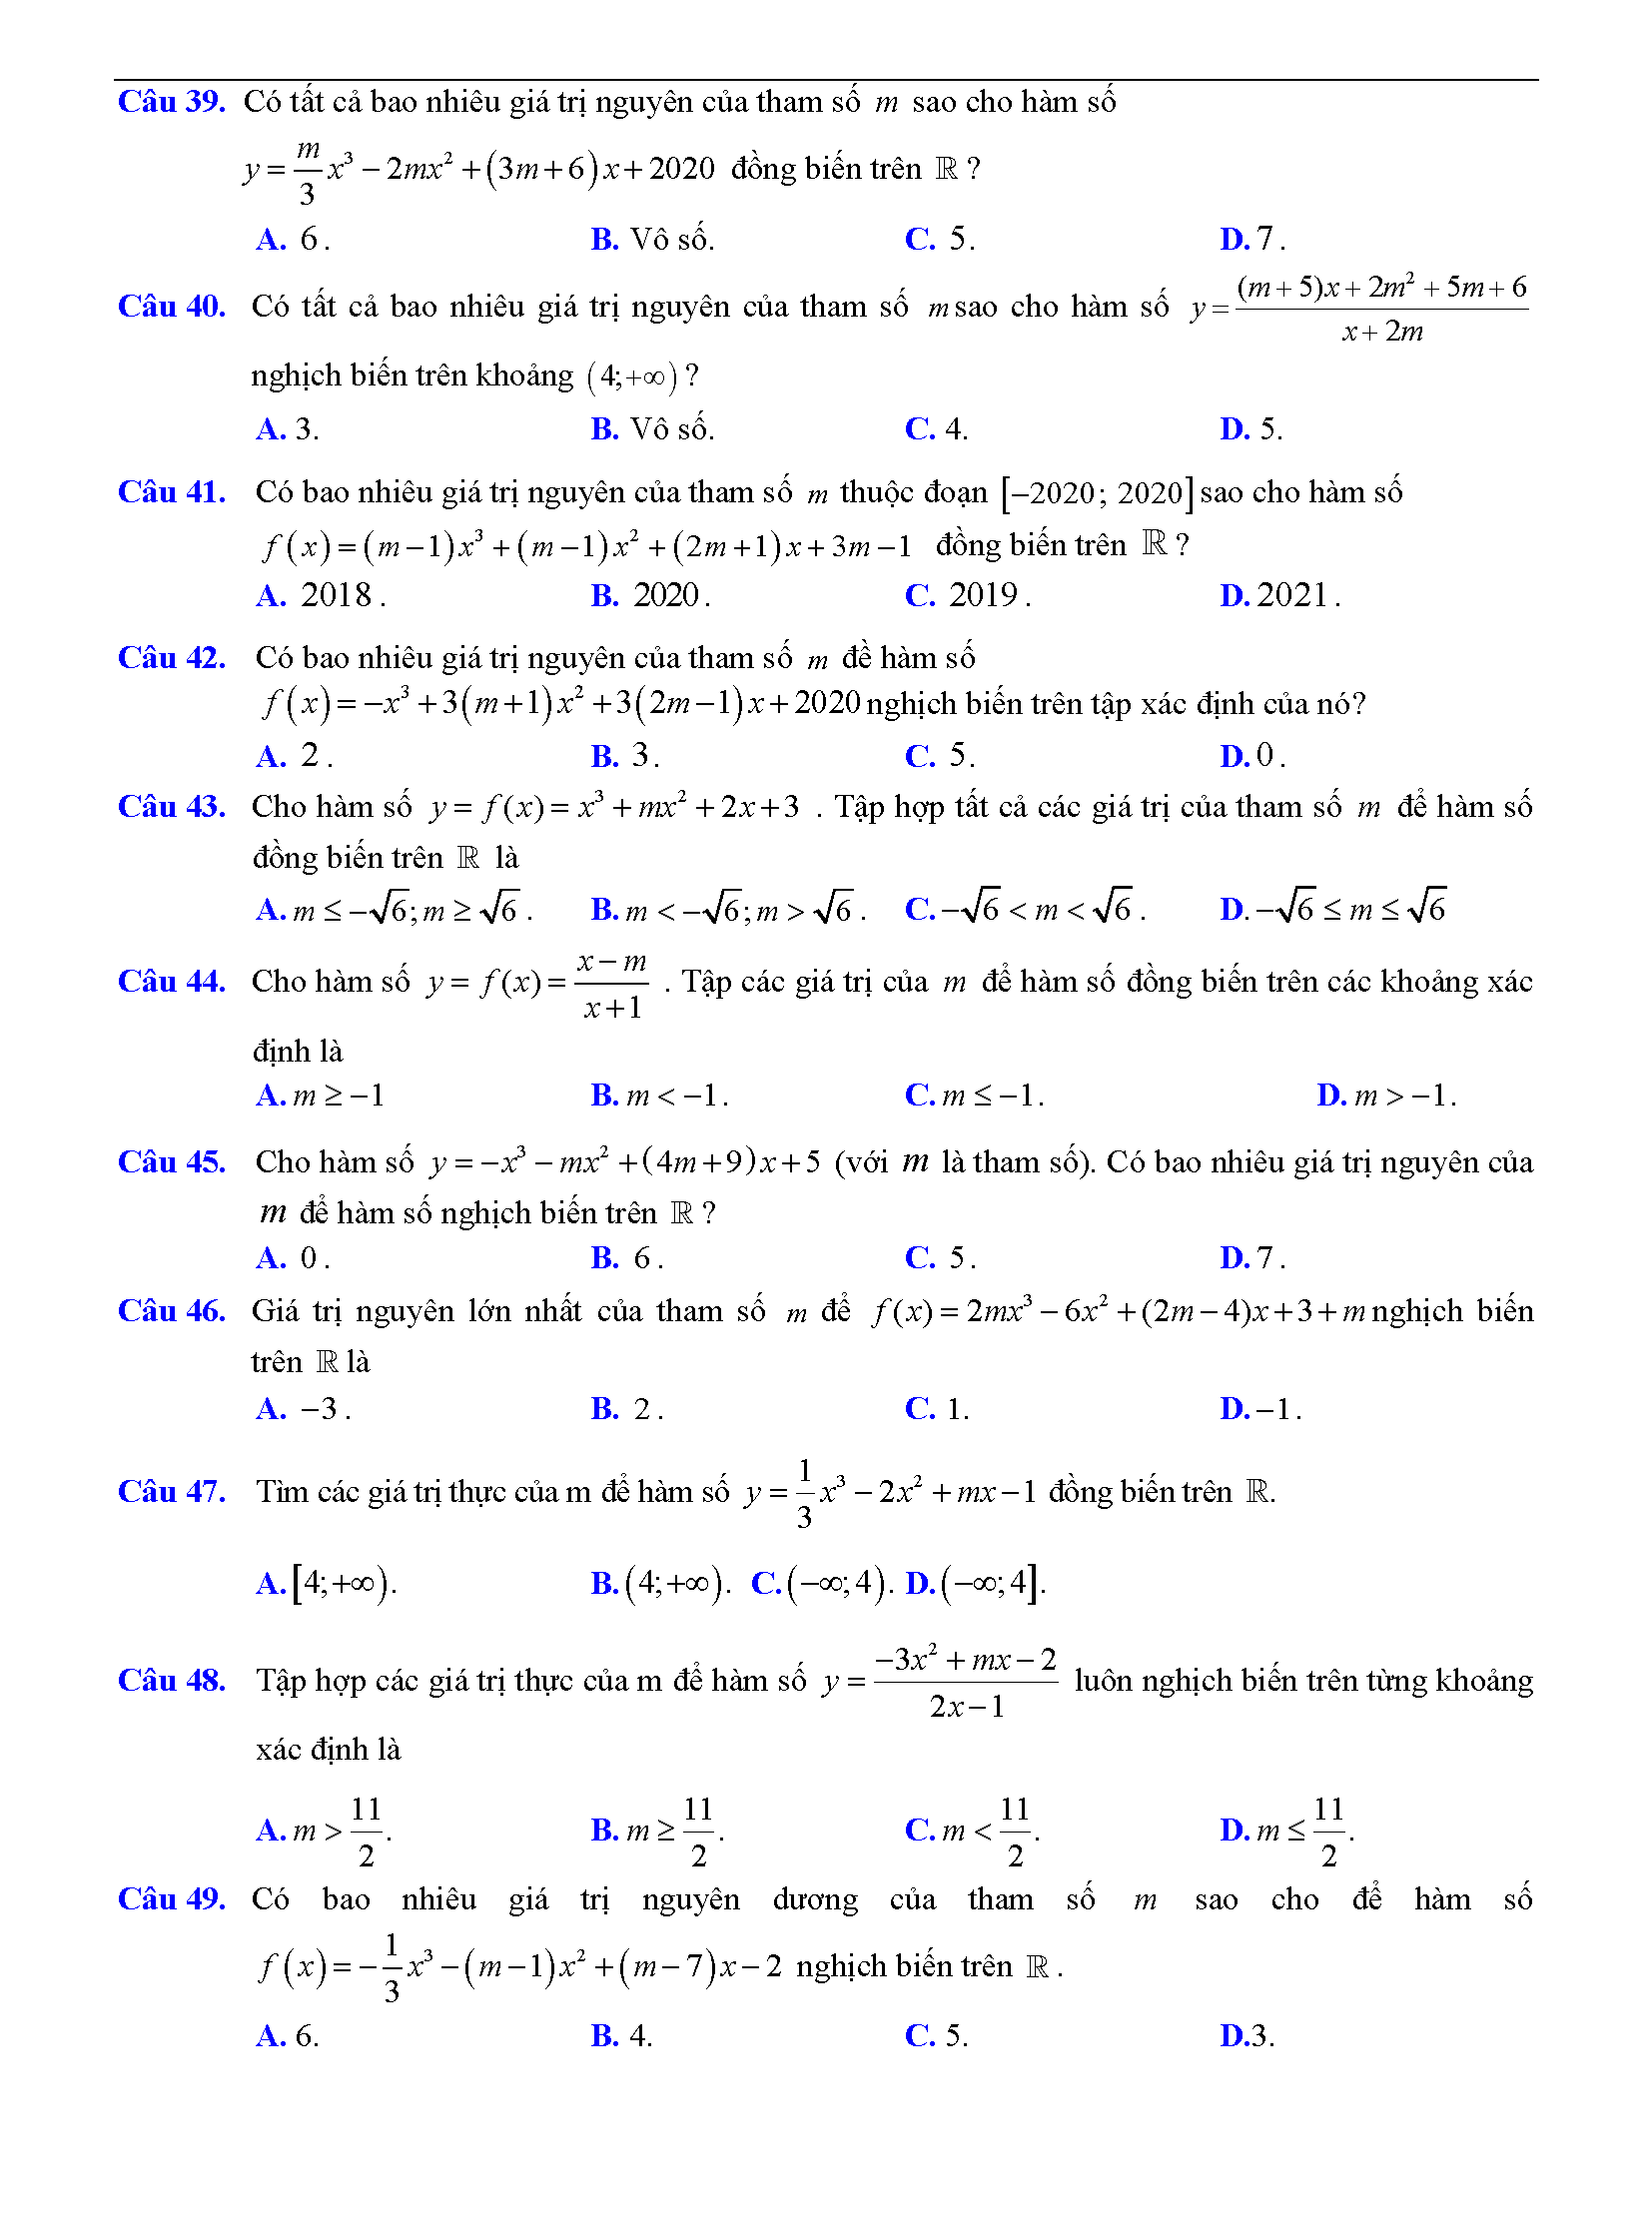 Trắc nghiệm tìm m để hàm số đơn điệu 5